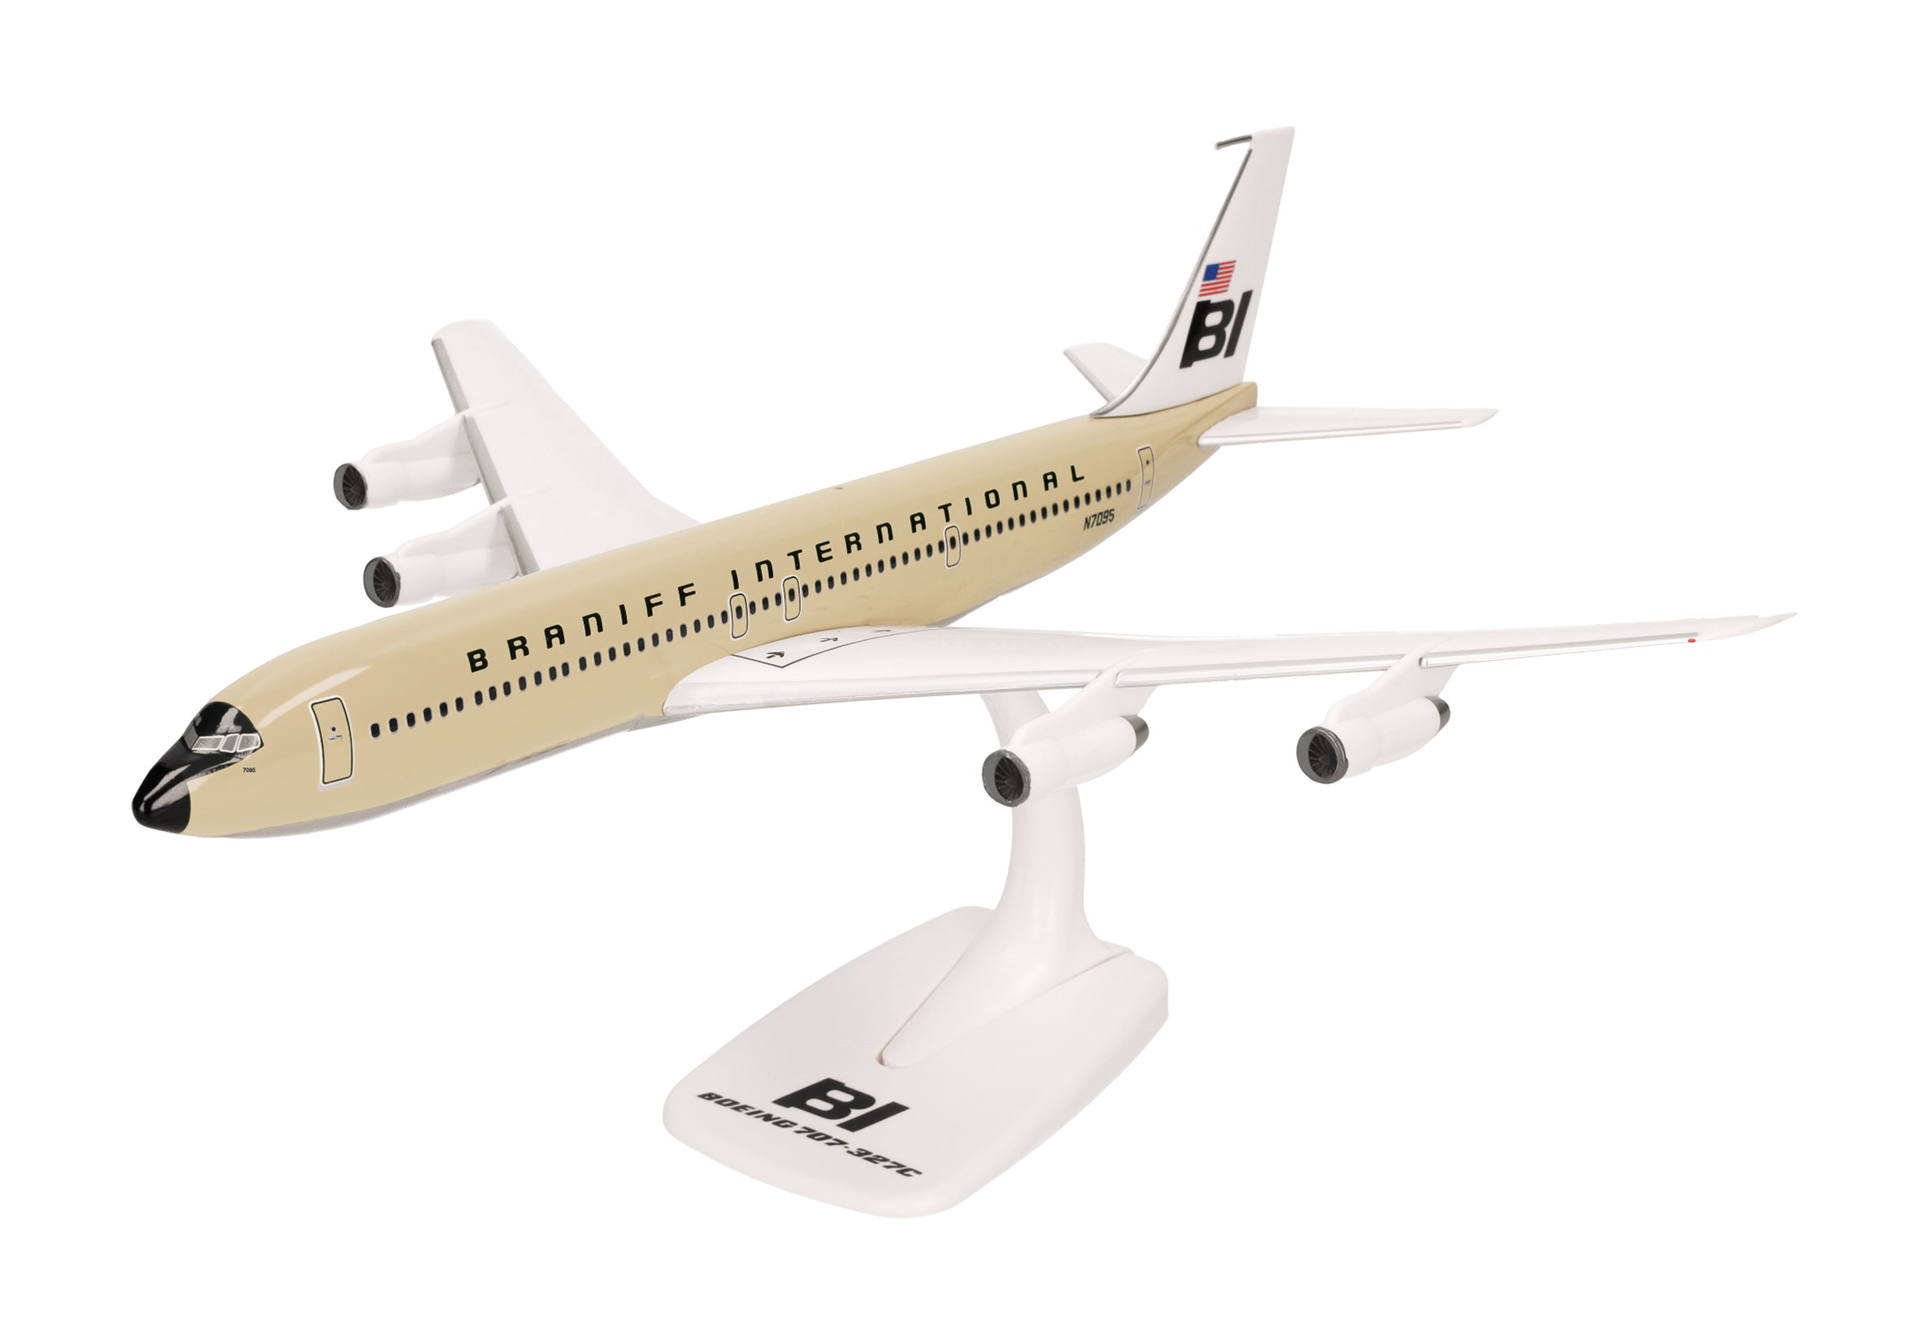 Braniff International Boeing 707-320 - Solid beige